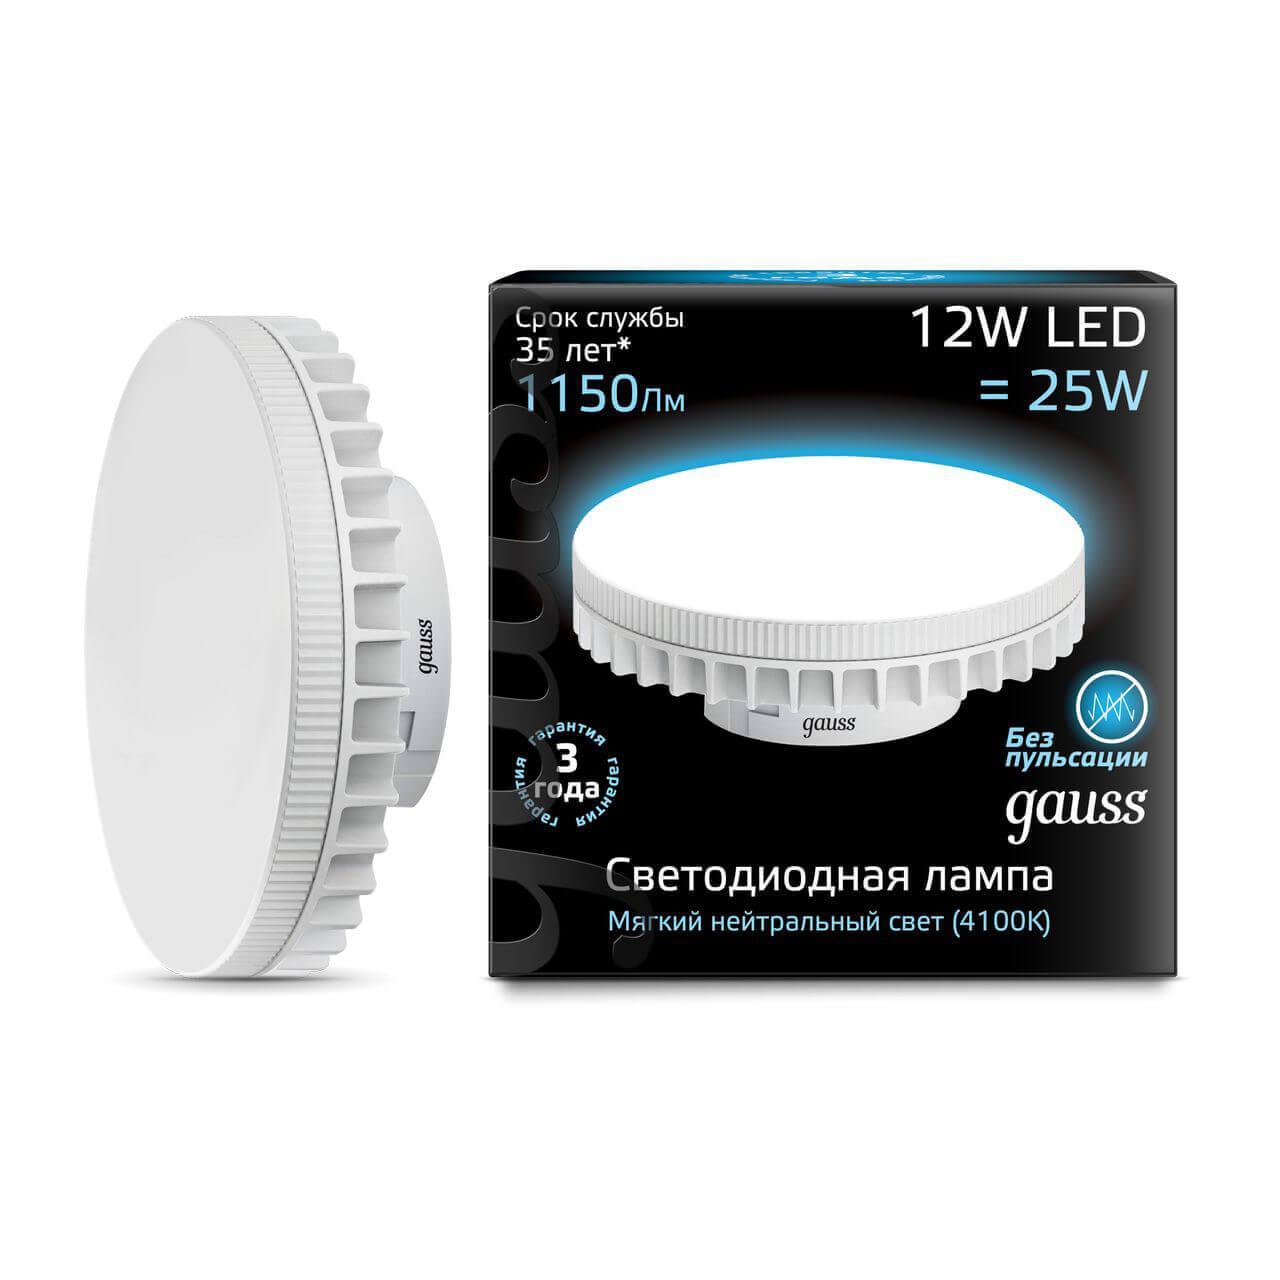 Gauss Лампа GX70 12W 1150lm 4100K LED